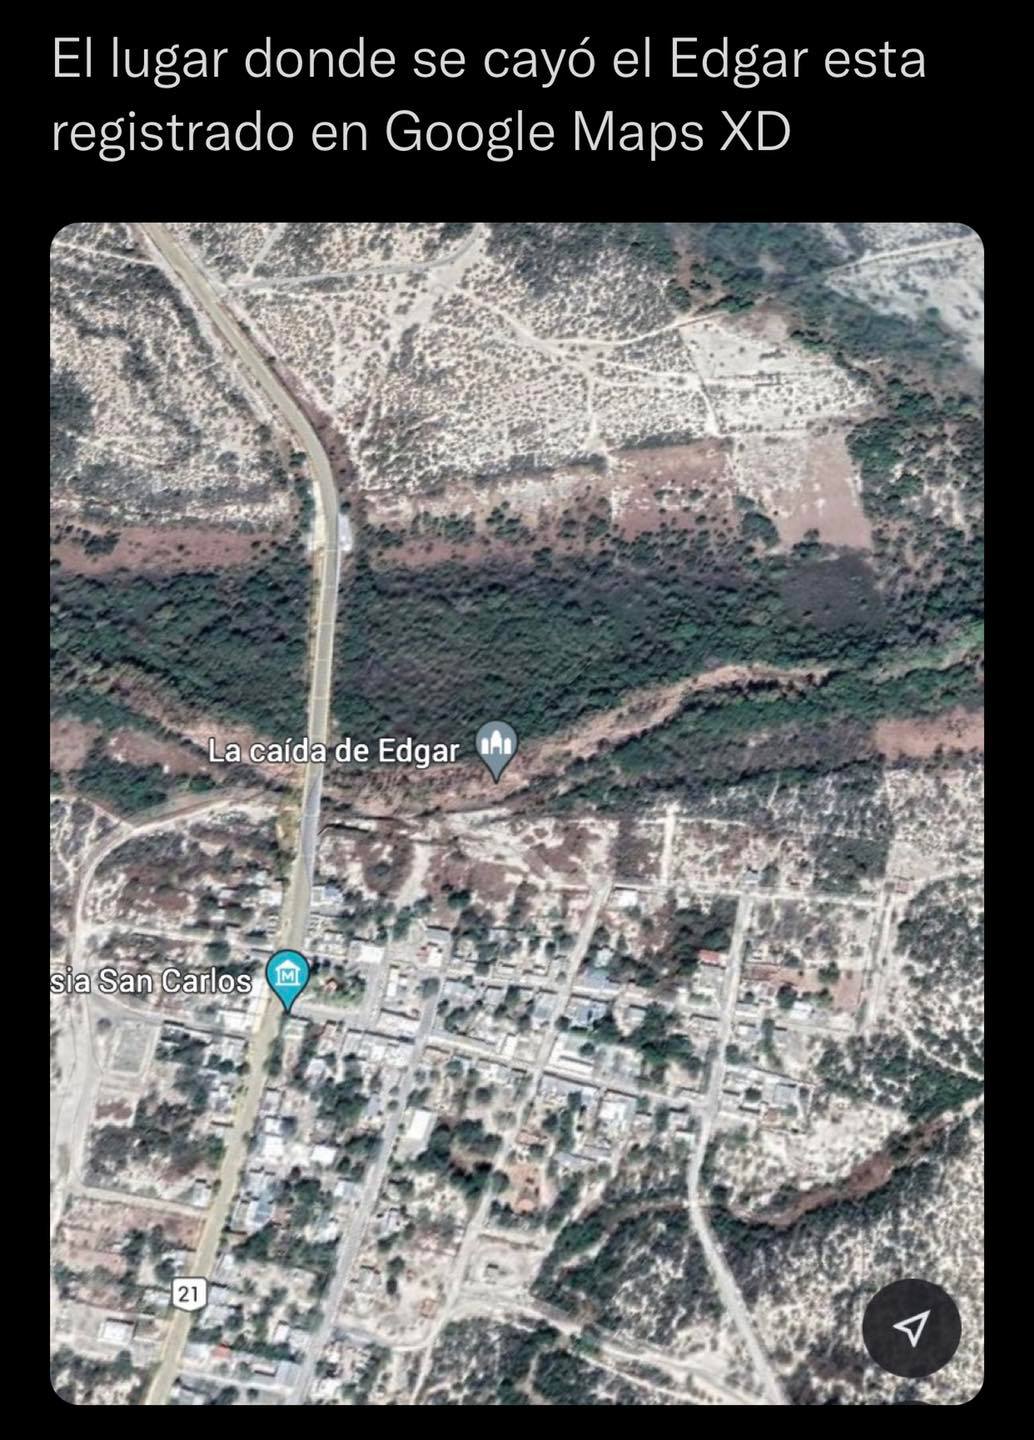 El lugar donde se cayó el Edgar esta registrado en Google Maps XD.